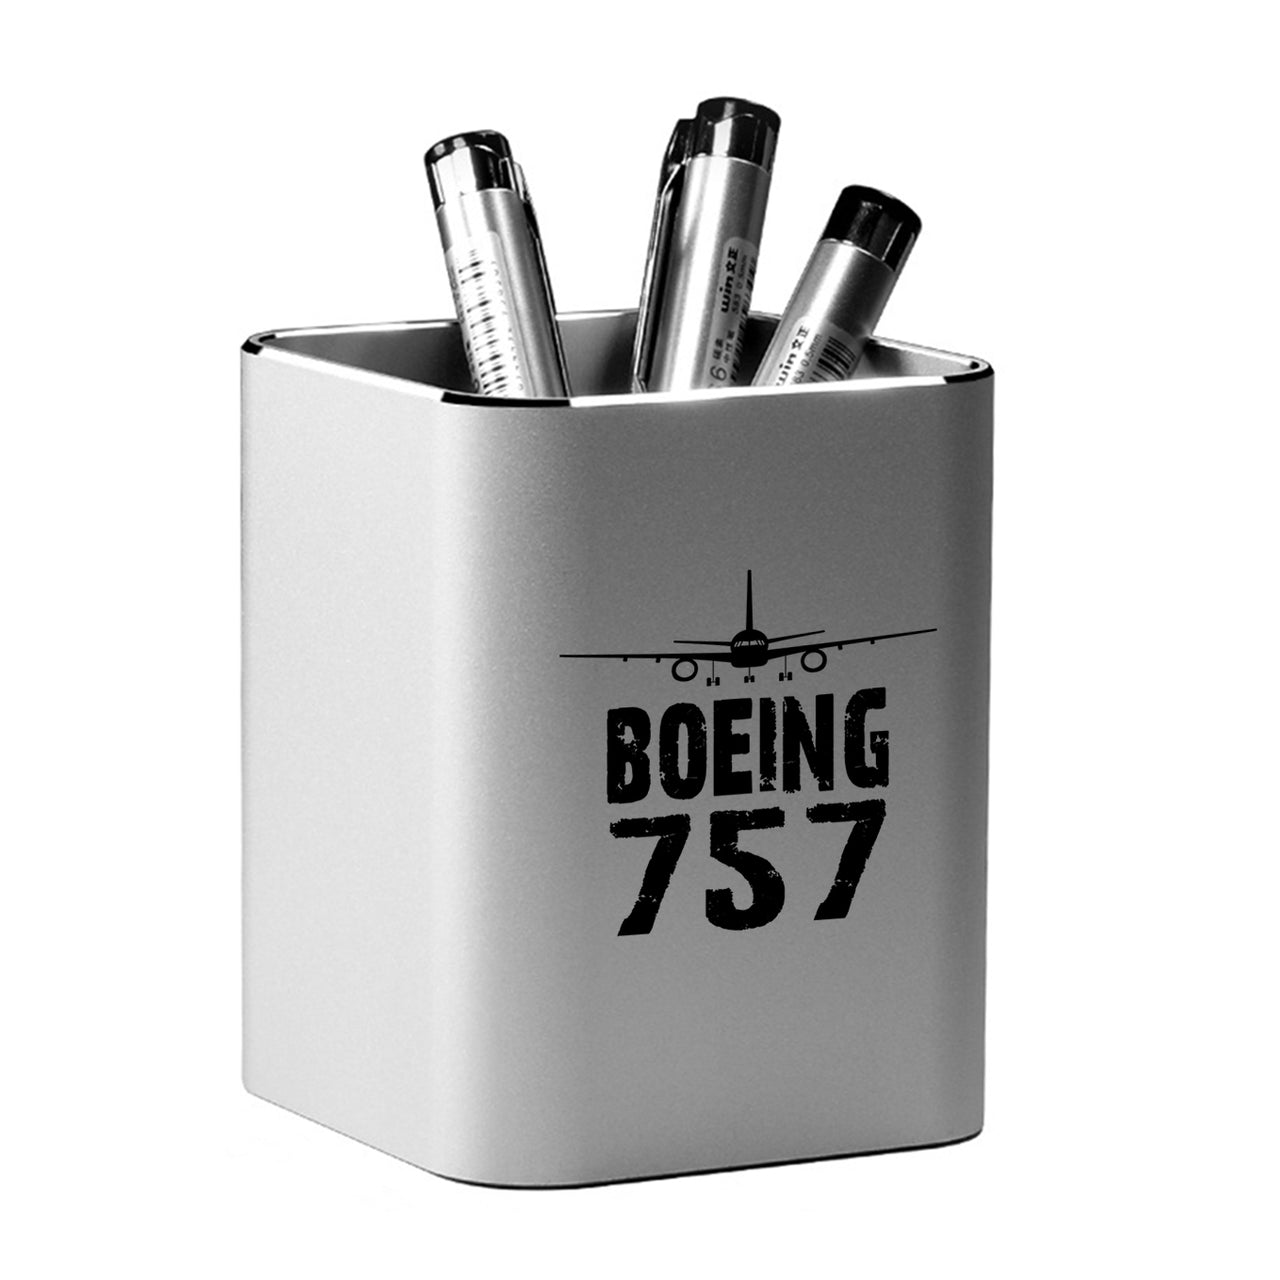 Boeing 757 & Plane Designed Aluminium Alloy Pen Holders